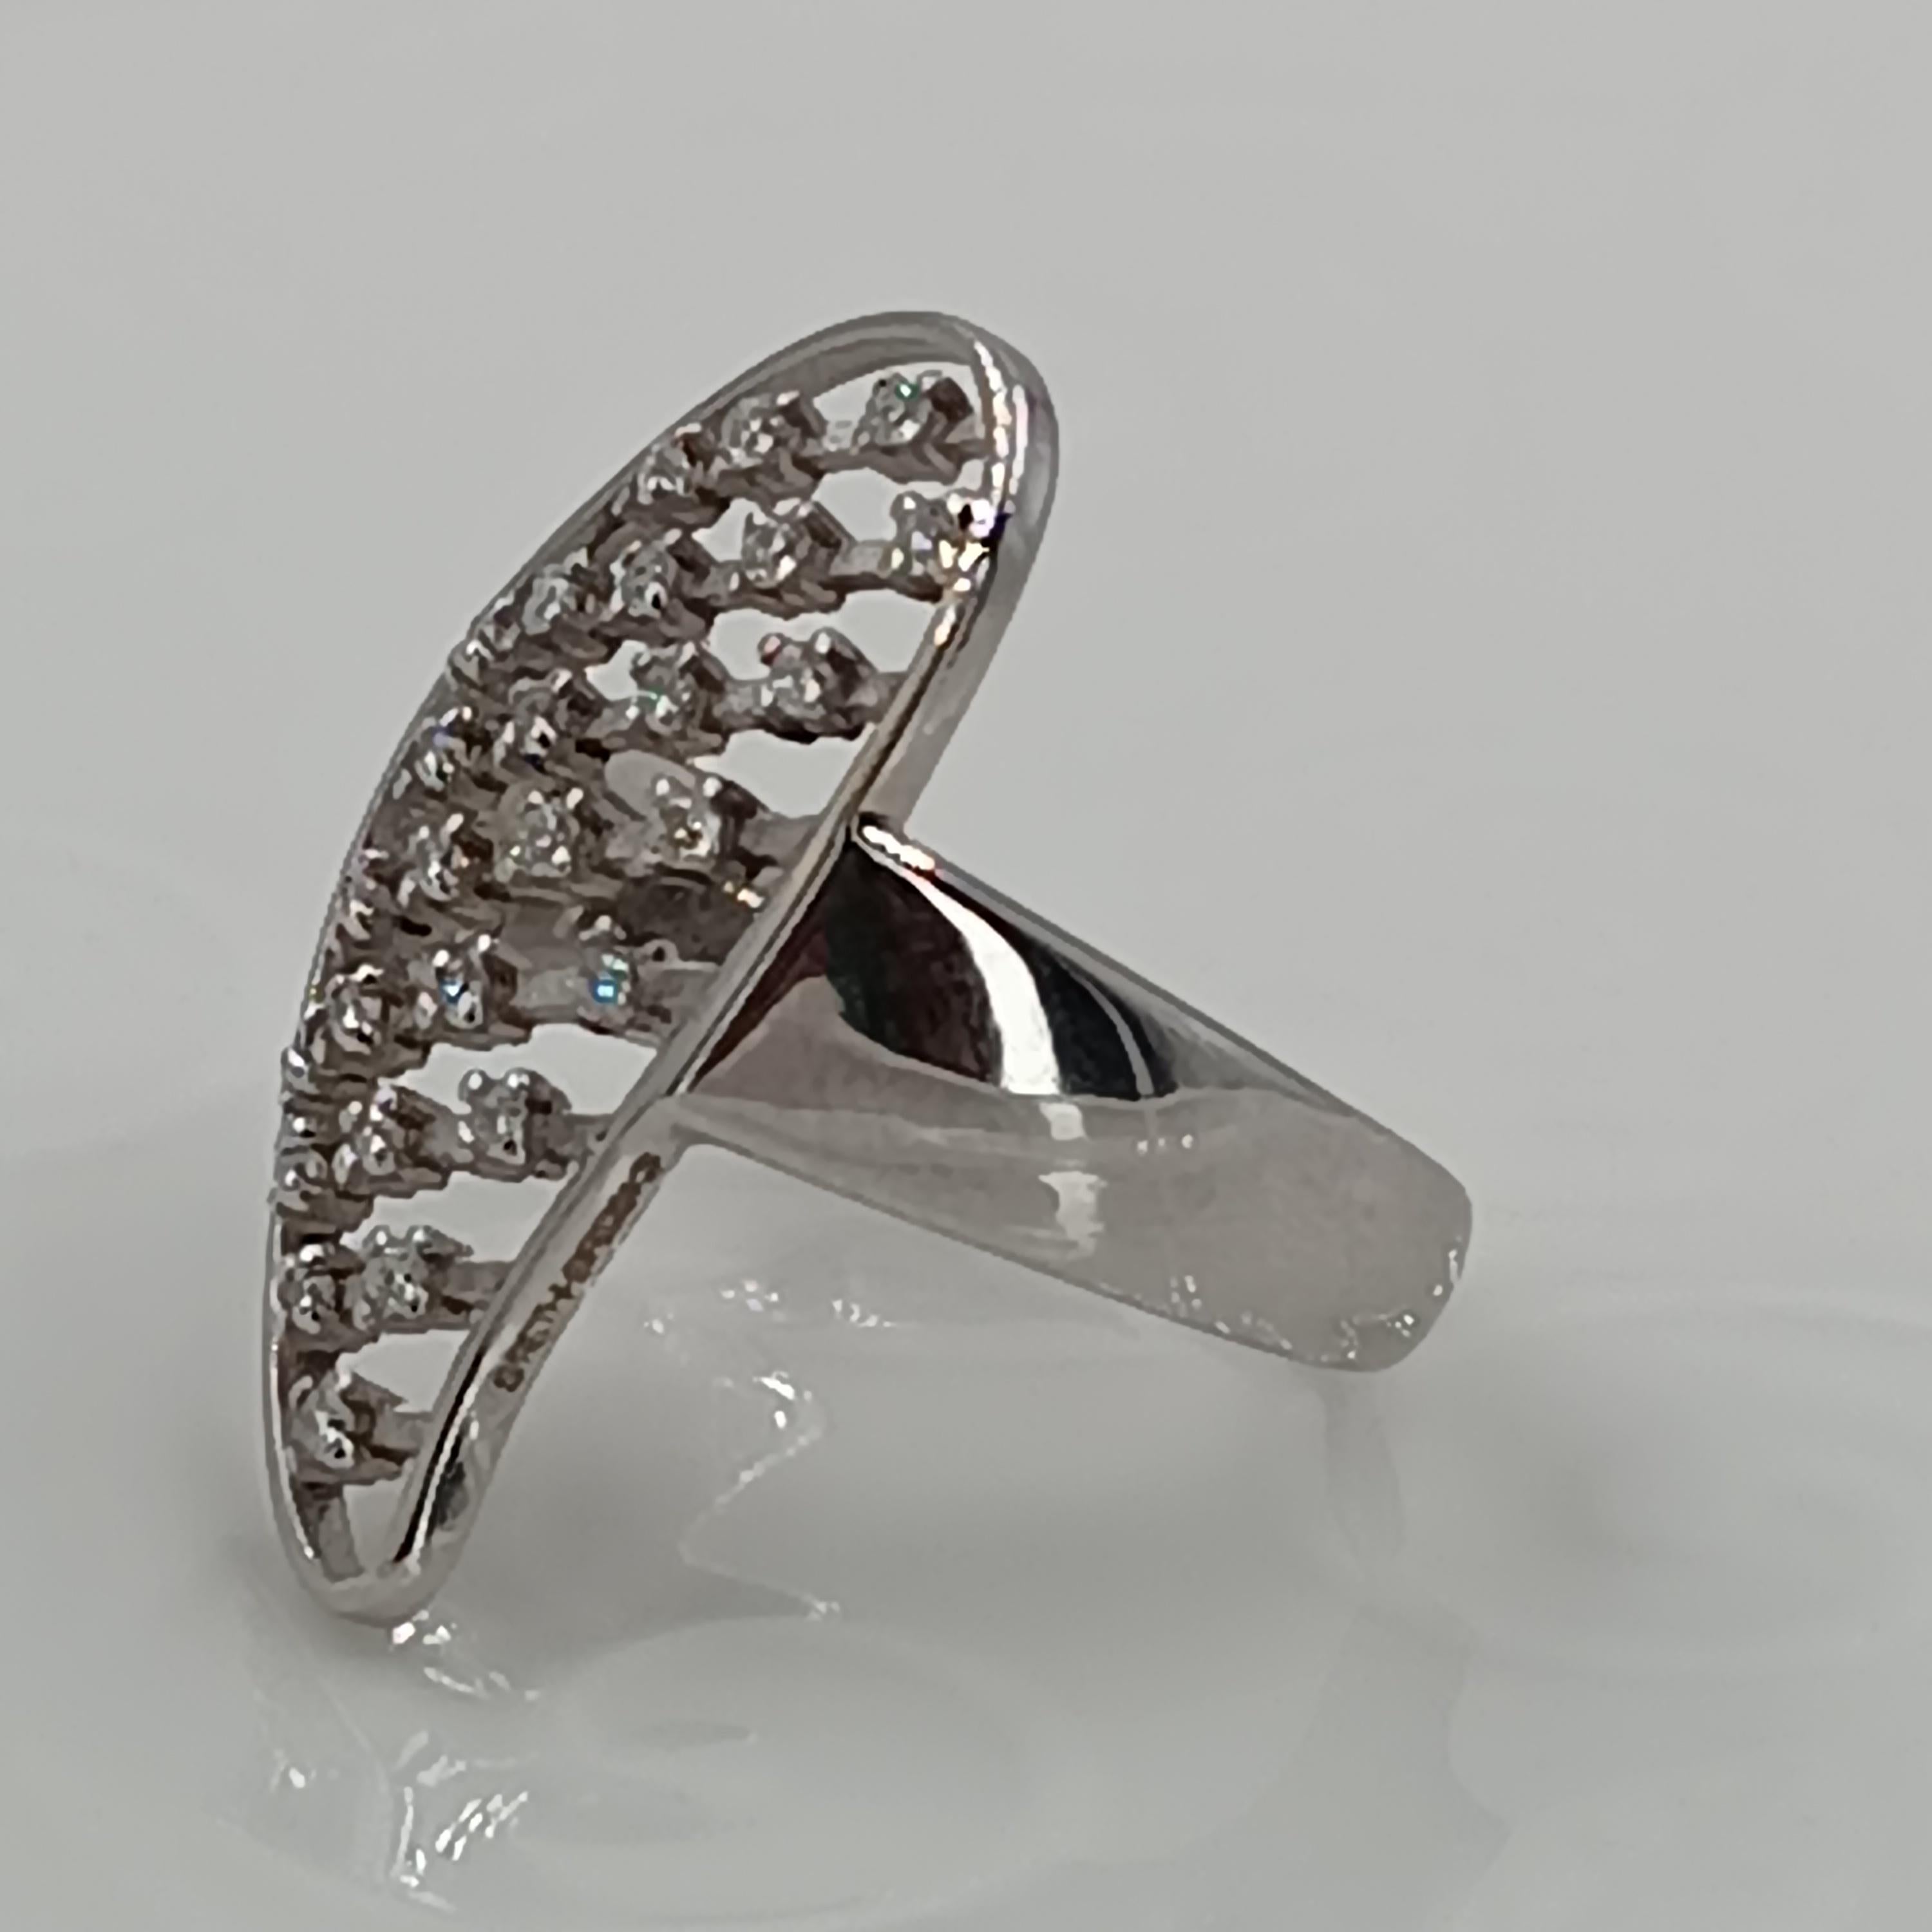 Dieser wunderbare Leo Milano Ring aus unserem Palestro  Collection'S zeigt in jedem Detail eine sehr komplizierte, aber perfekt ausgeführte Verarbeitung. Der Ring ist aus 18 Karat Weißgold und wiegt 5,57 Gramm, die Diamanten sind insgesamt  sind 